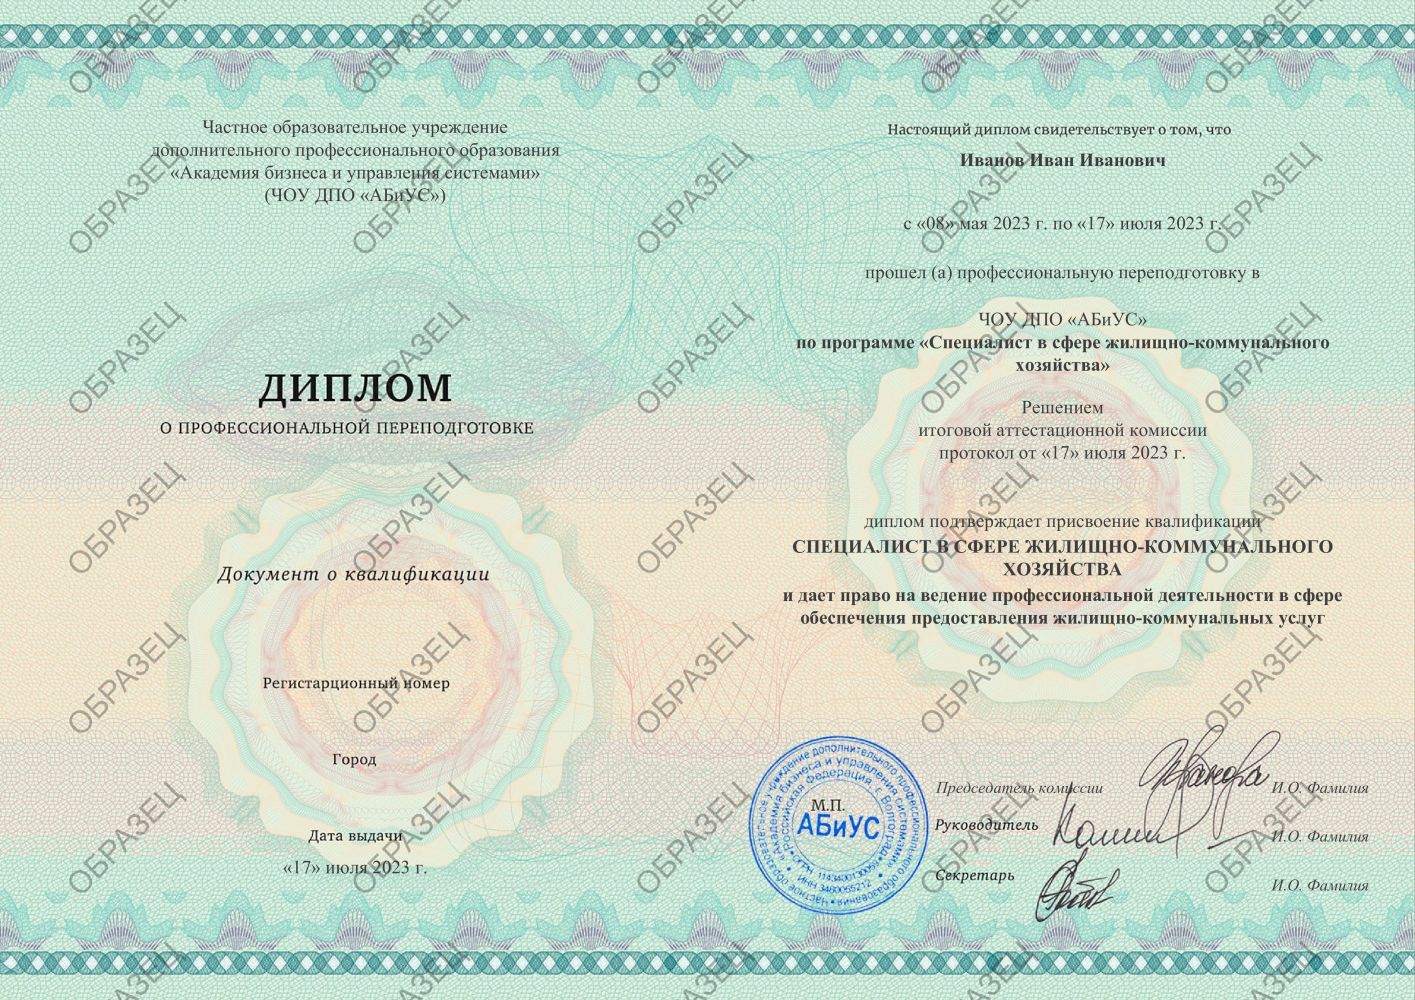 Диплом Специалист в сфере жилищно-коммунального хозяйства 260 часов 9813 руб.